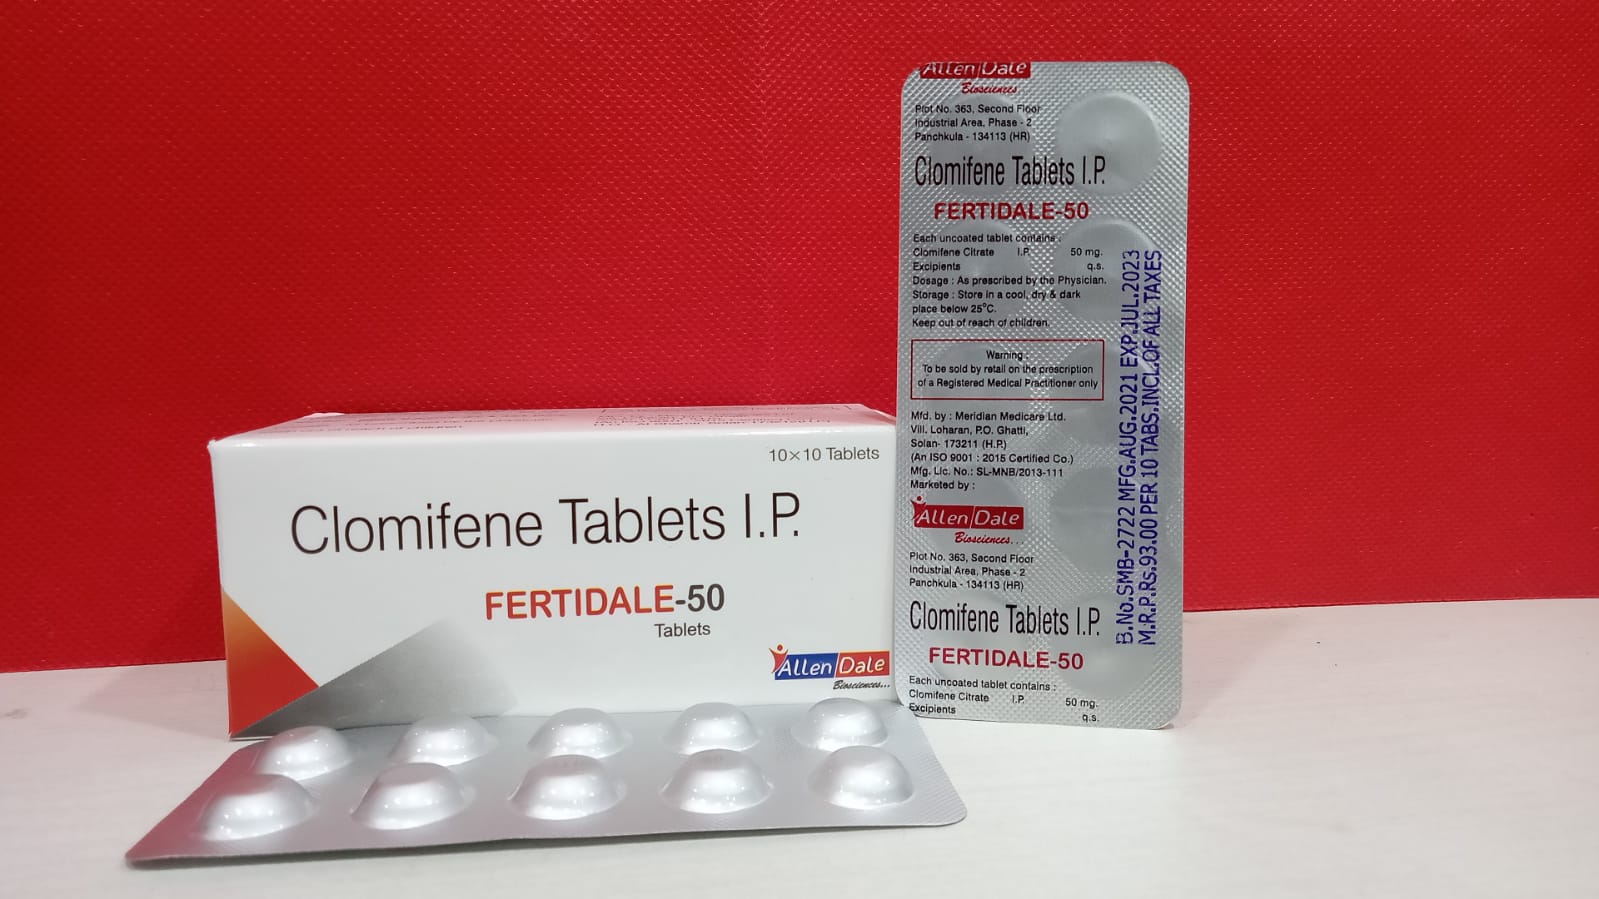 FERTIDALE-50 Tablets